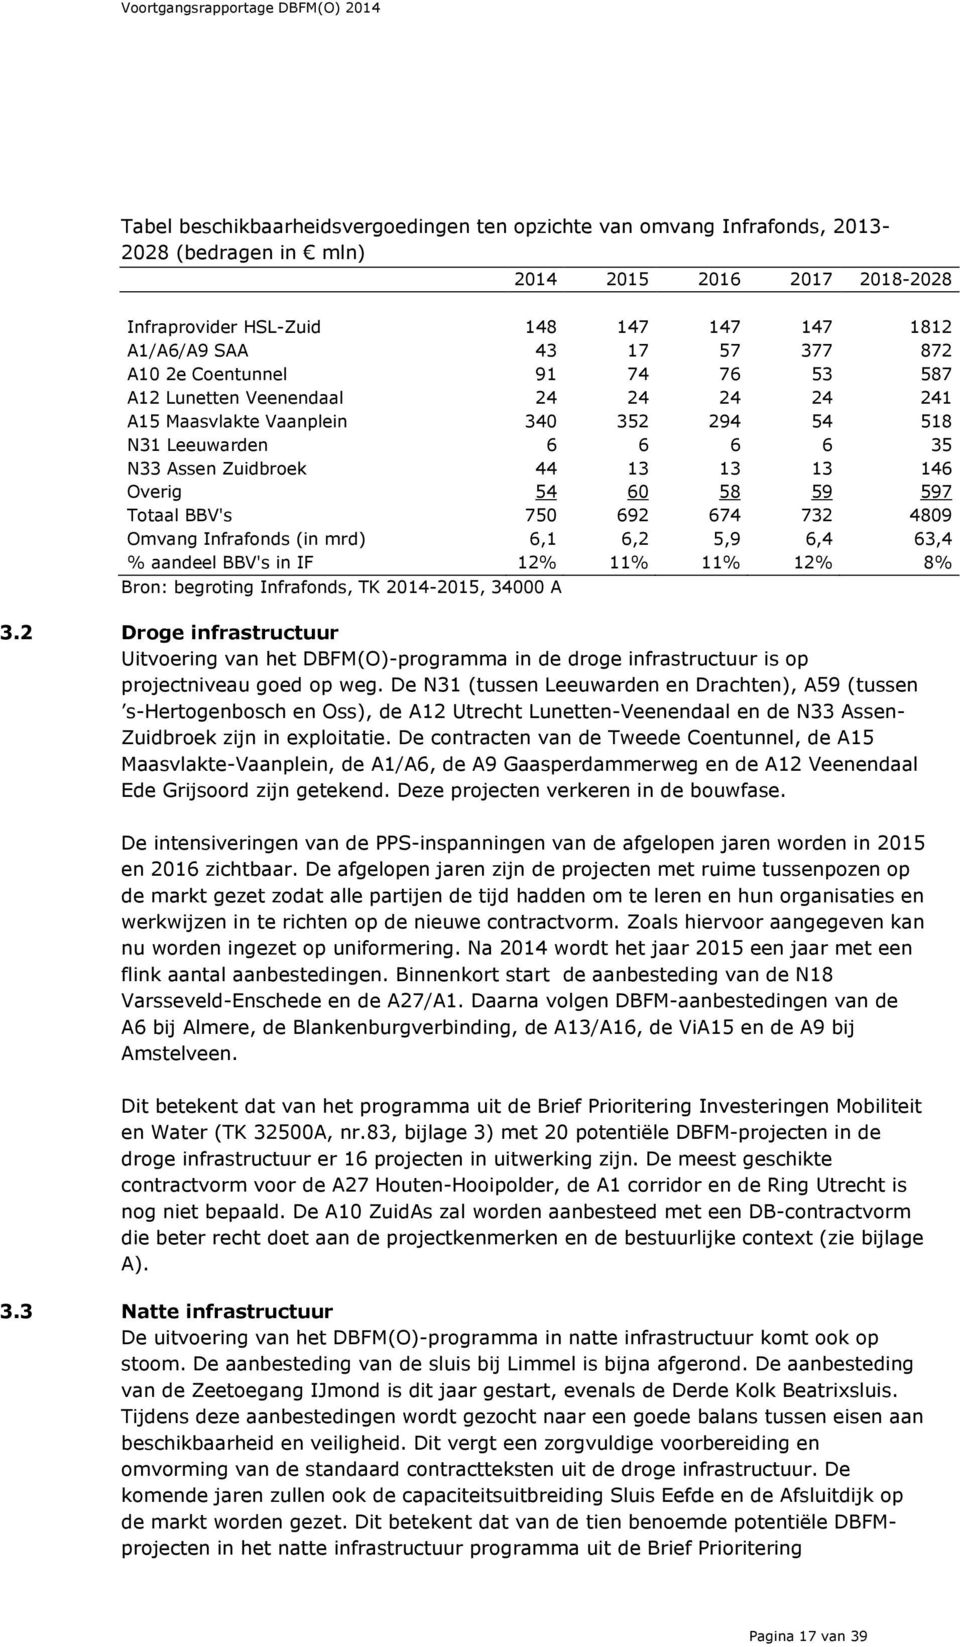 59 597 Totaal BBV's 750 692 674 732 4809 Omvang Infrafonds (in mrd) 6,1 6,2 5,9 6,4 63,4 % aandeel BBV's in IF 12% 11% 11% 12% 8% Bron: begroting Infrafonds, TK 2014-2015, 34000 A 3.